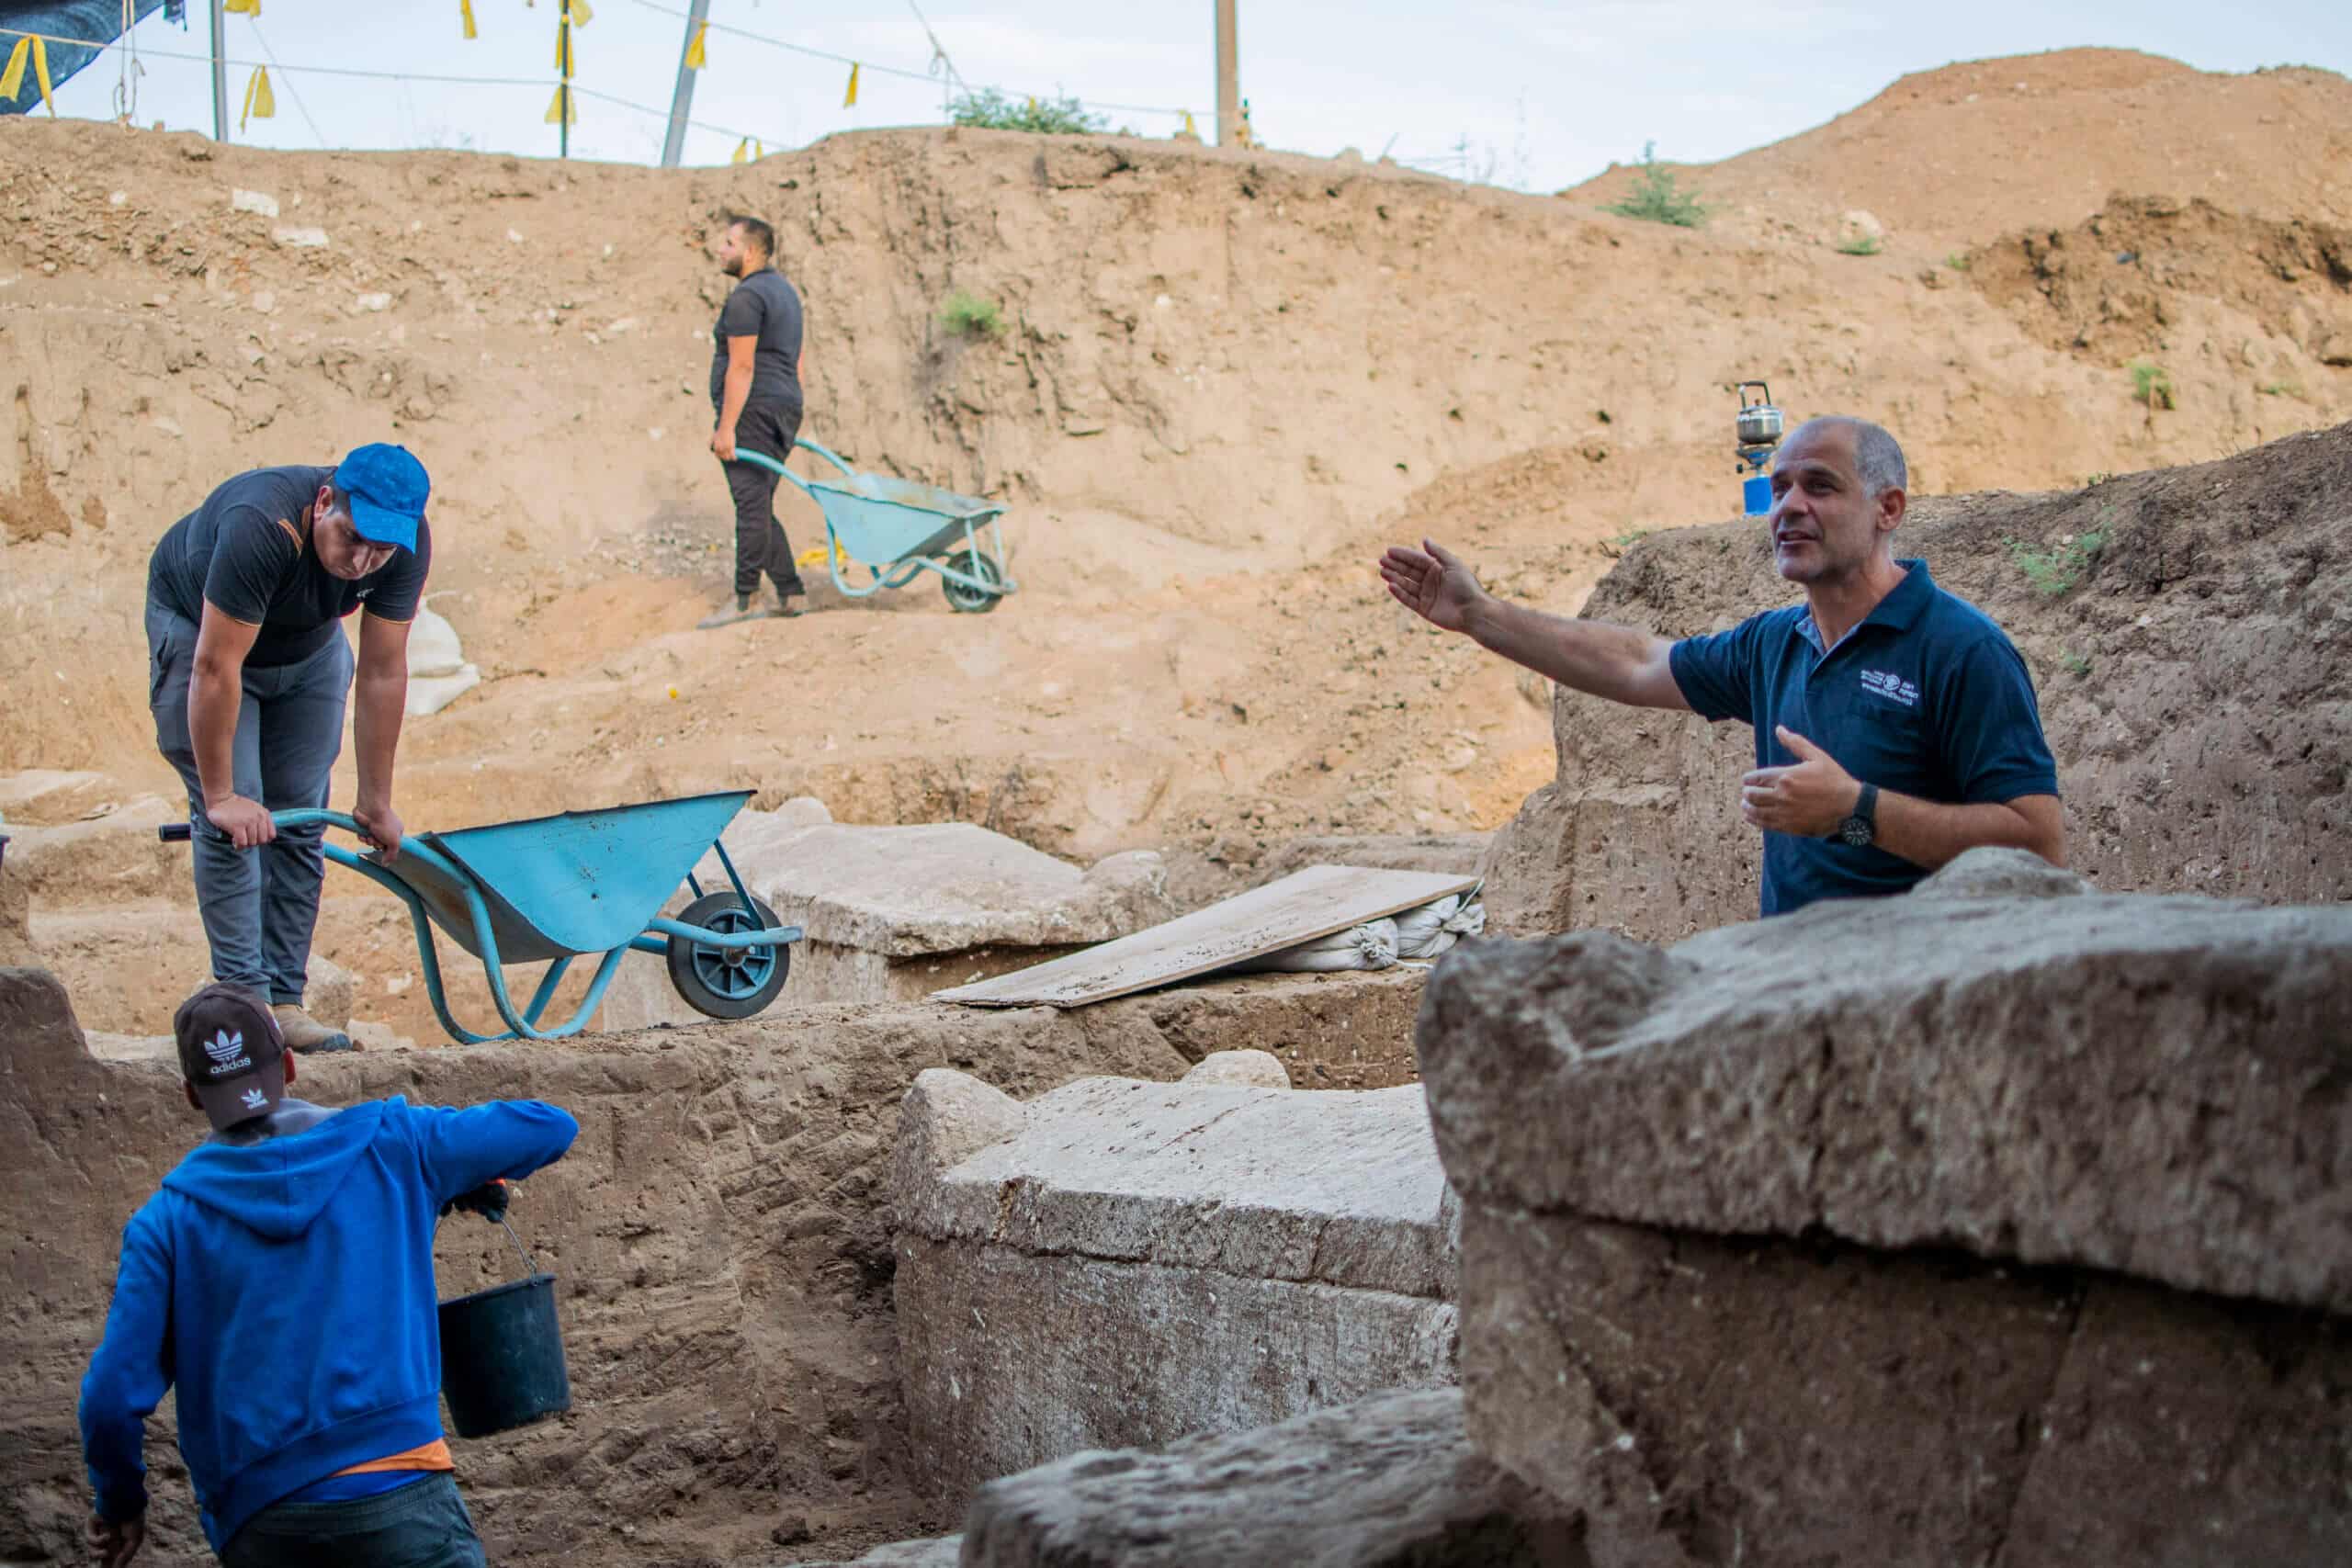 מנהל החפירה פבלו בצר ליד ארונות קבורה מימי הסנהדרין.צילום יולי שוורץ רשות העתיקות